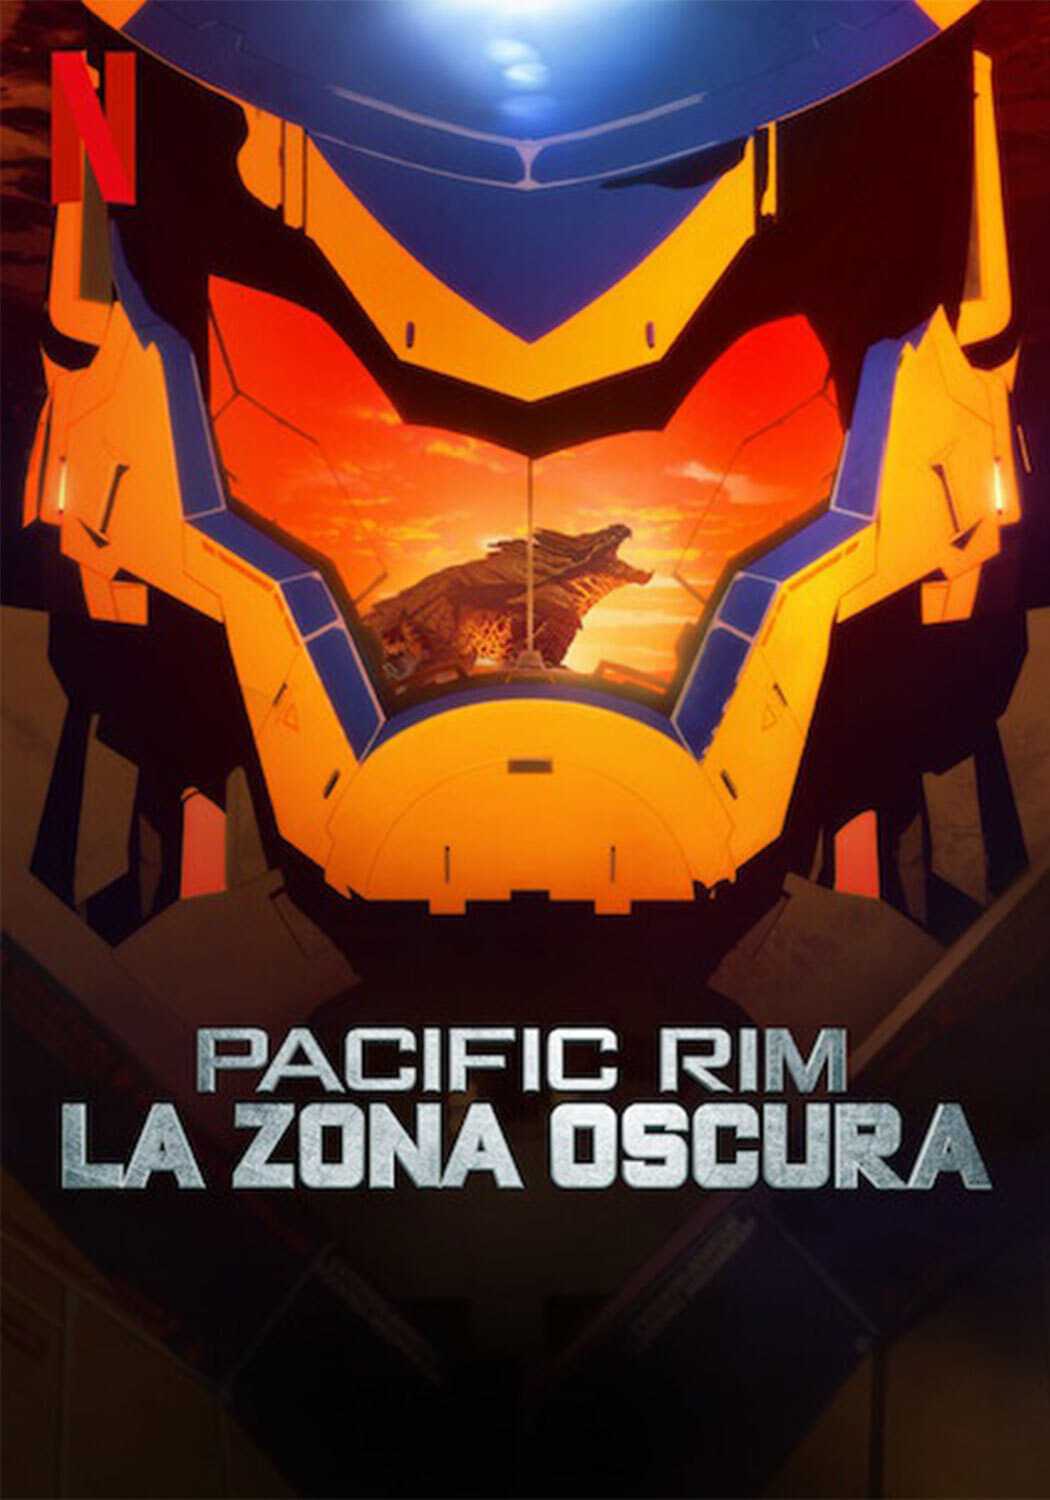 Pacific Rim - La Zona oscura in streaming